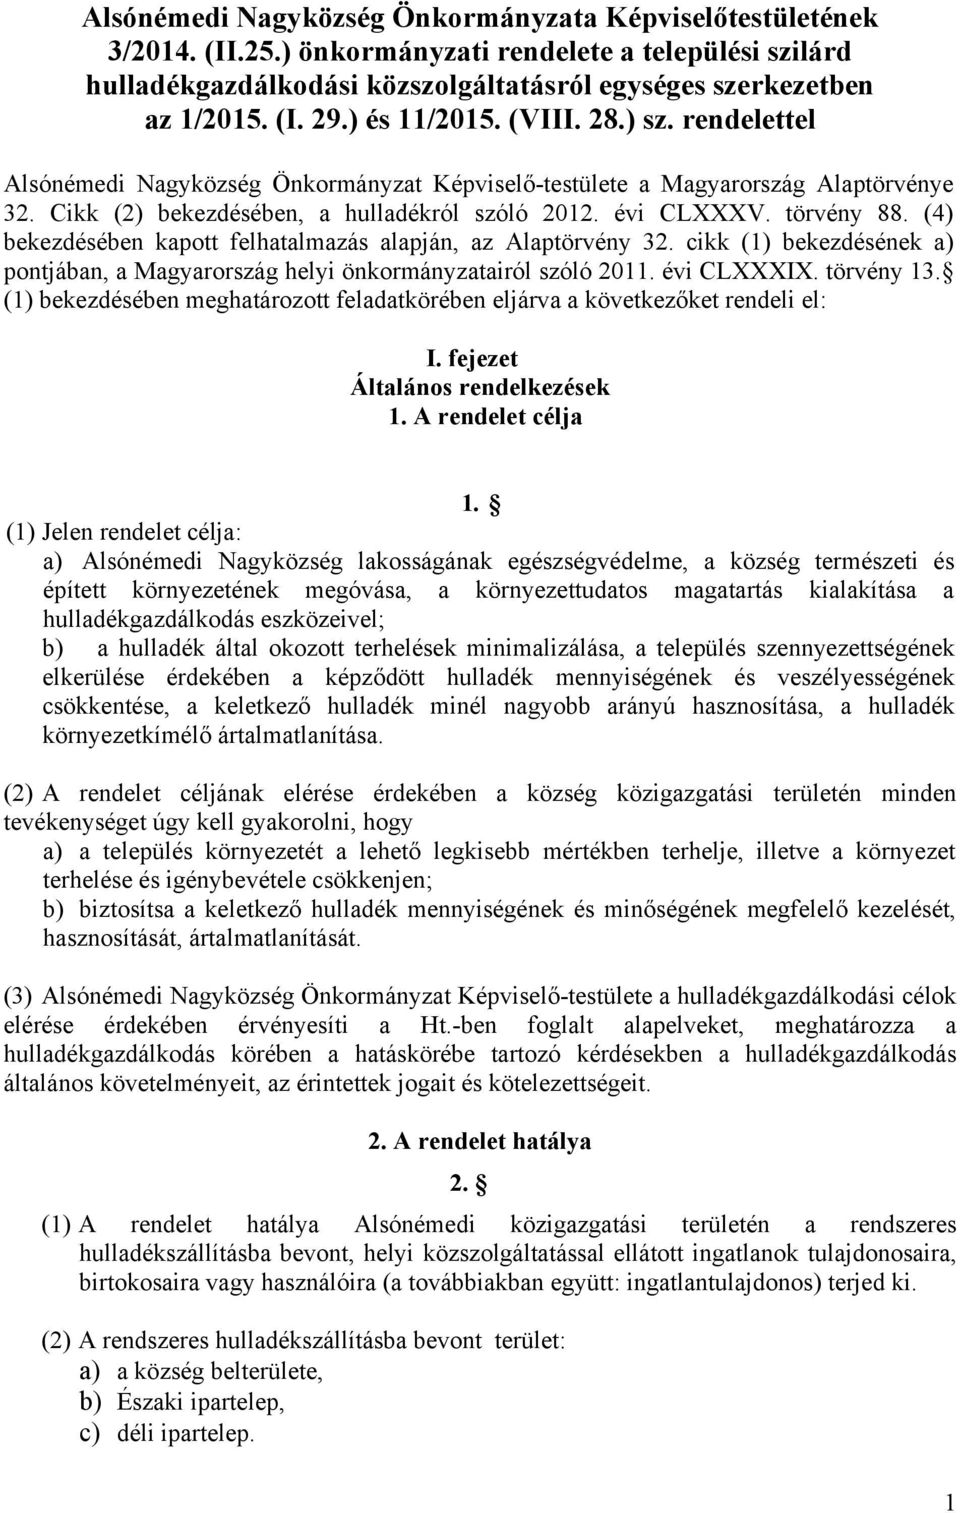 törvény 88. (4) bekezdésében kapott felhatalmazás alapján, az Alaptörvény 32. cikk (1) bekezdésének a) pontjában, a Magyarország helyi önkormányzatairól szóló 2011. évi CLXXXIX. törvény 13.